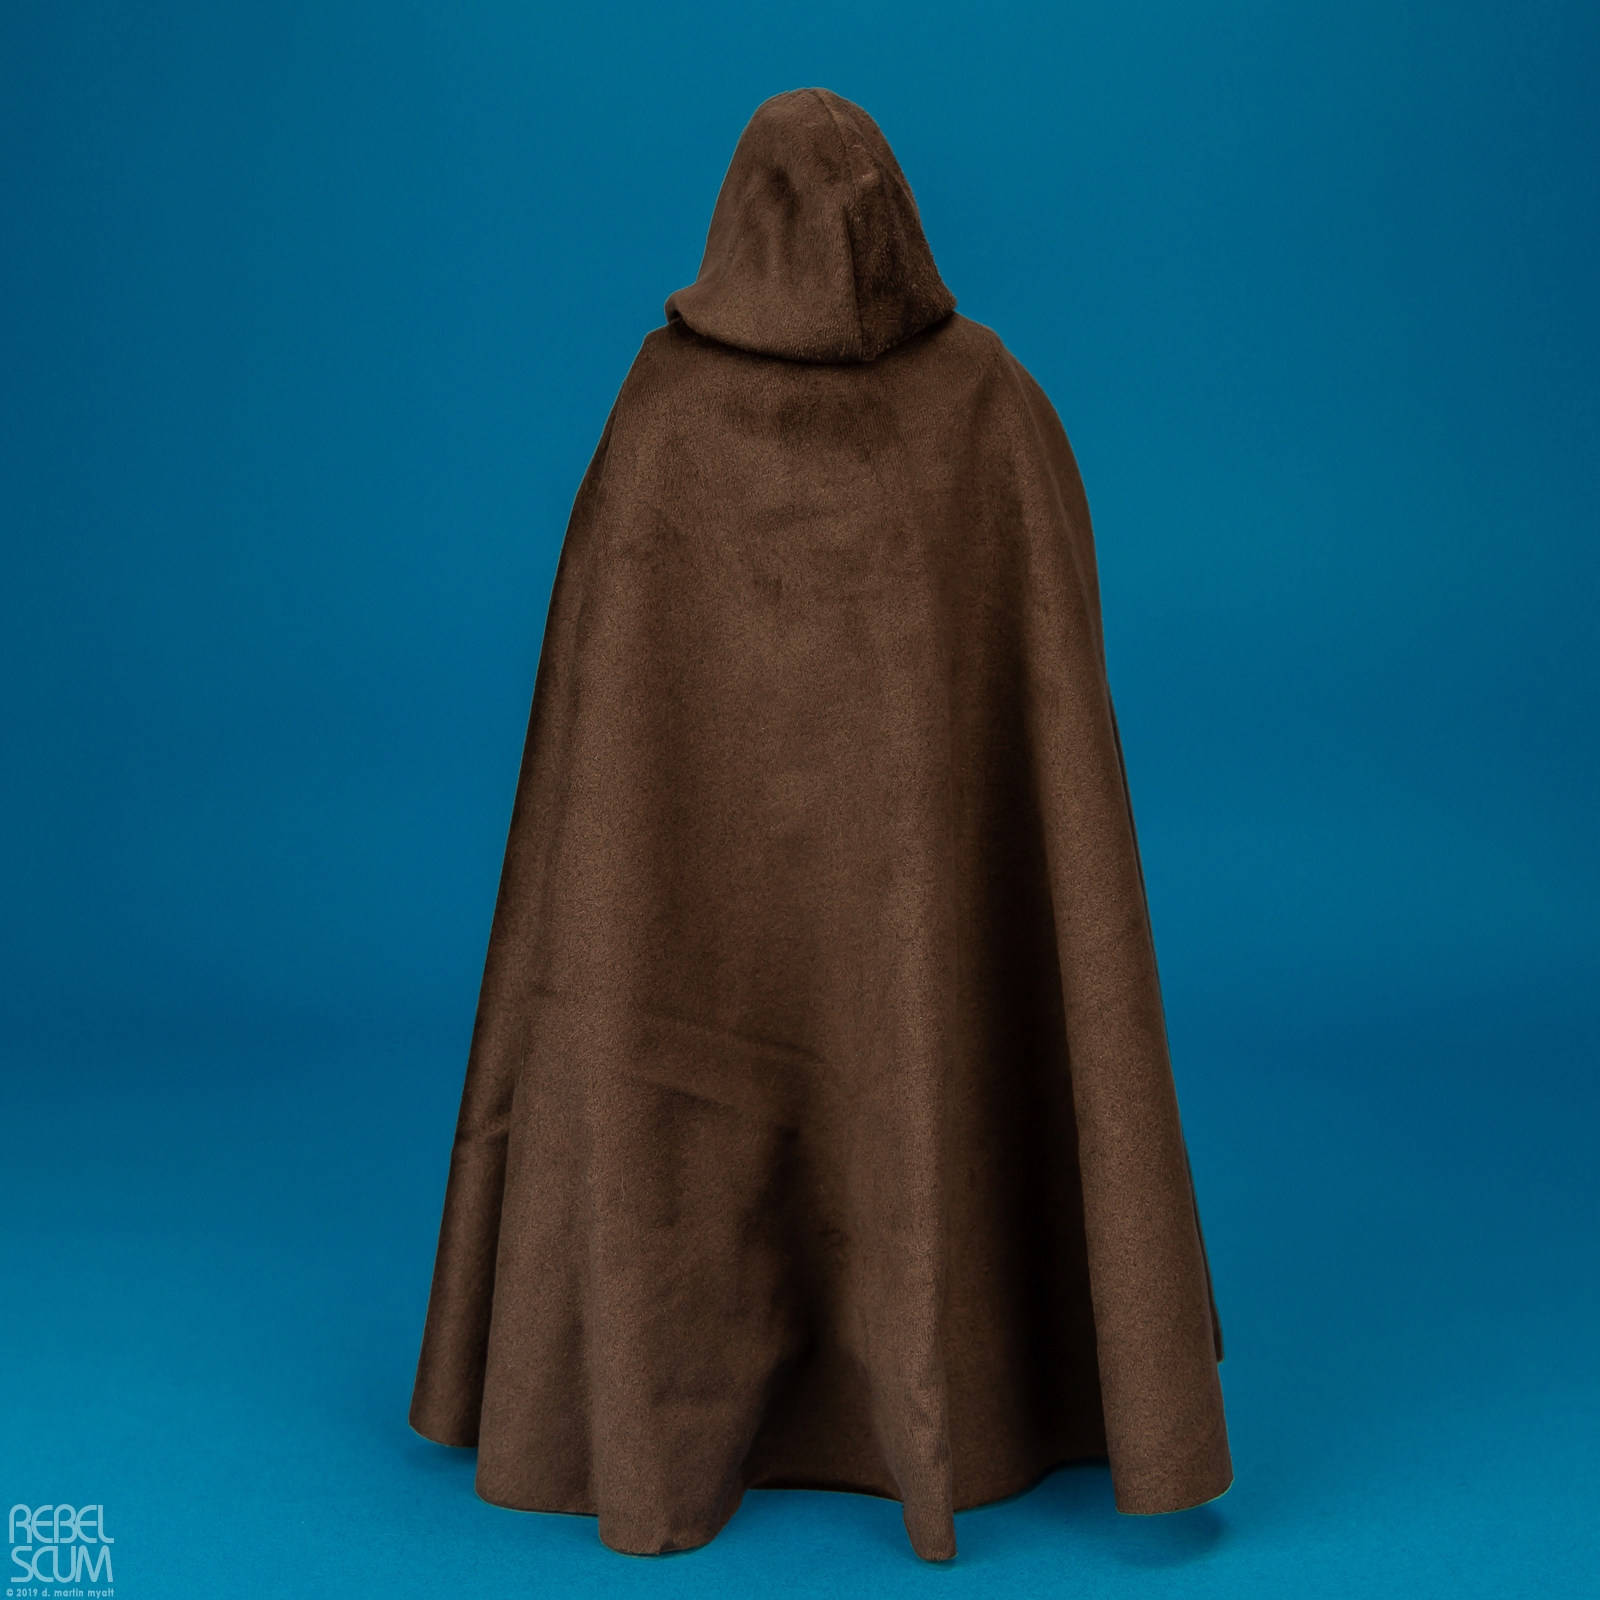 Luke-Skywalker-MMS429-Return-Of-The-Jedi-Hot-Toys-004.jpg